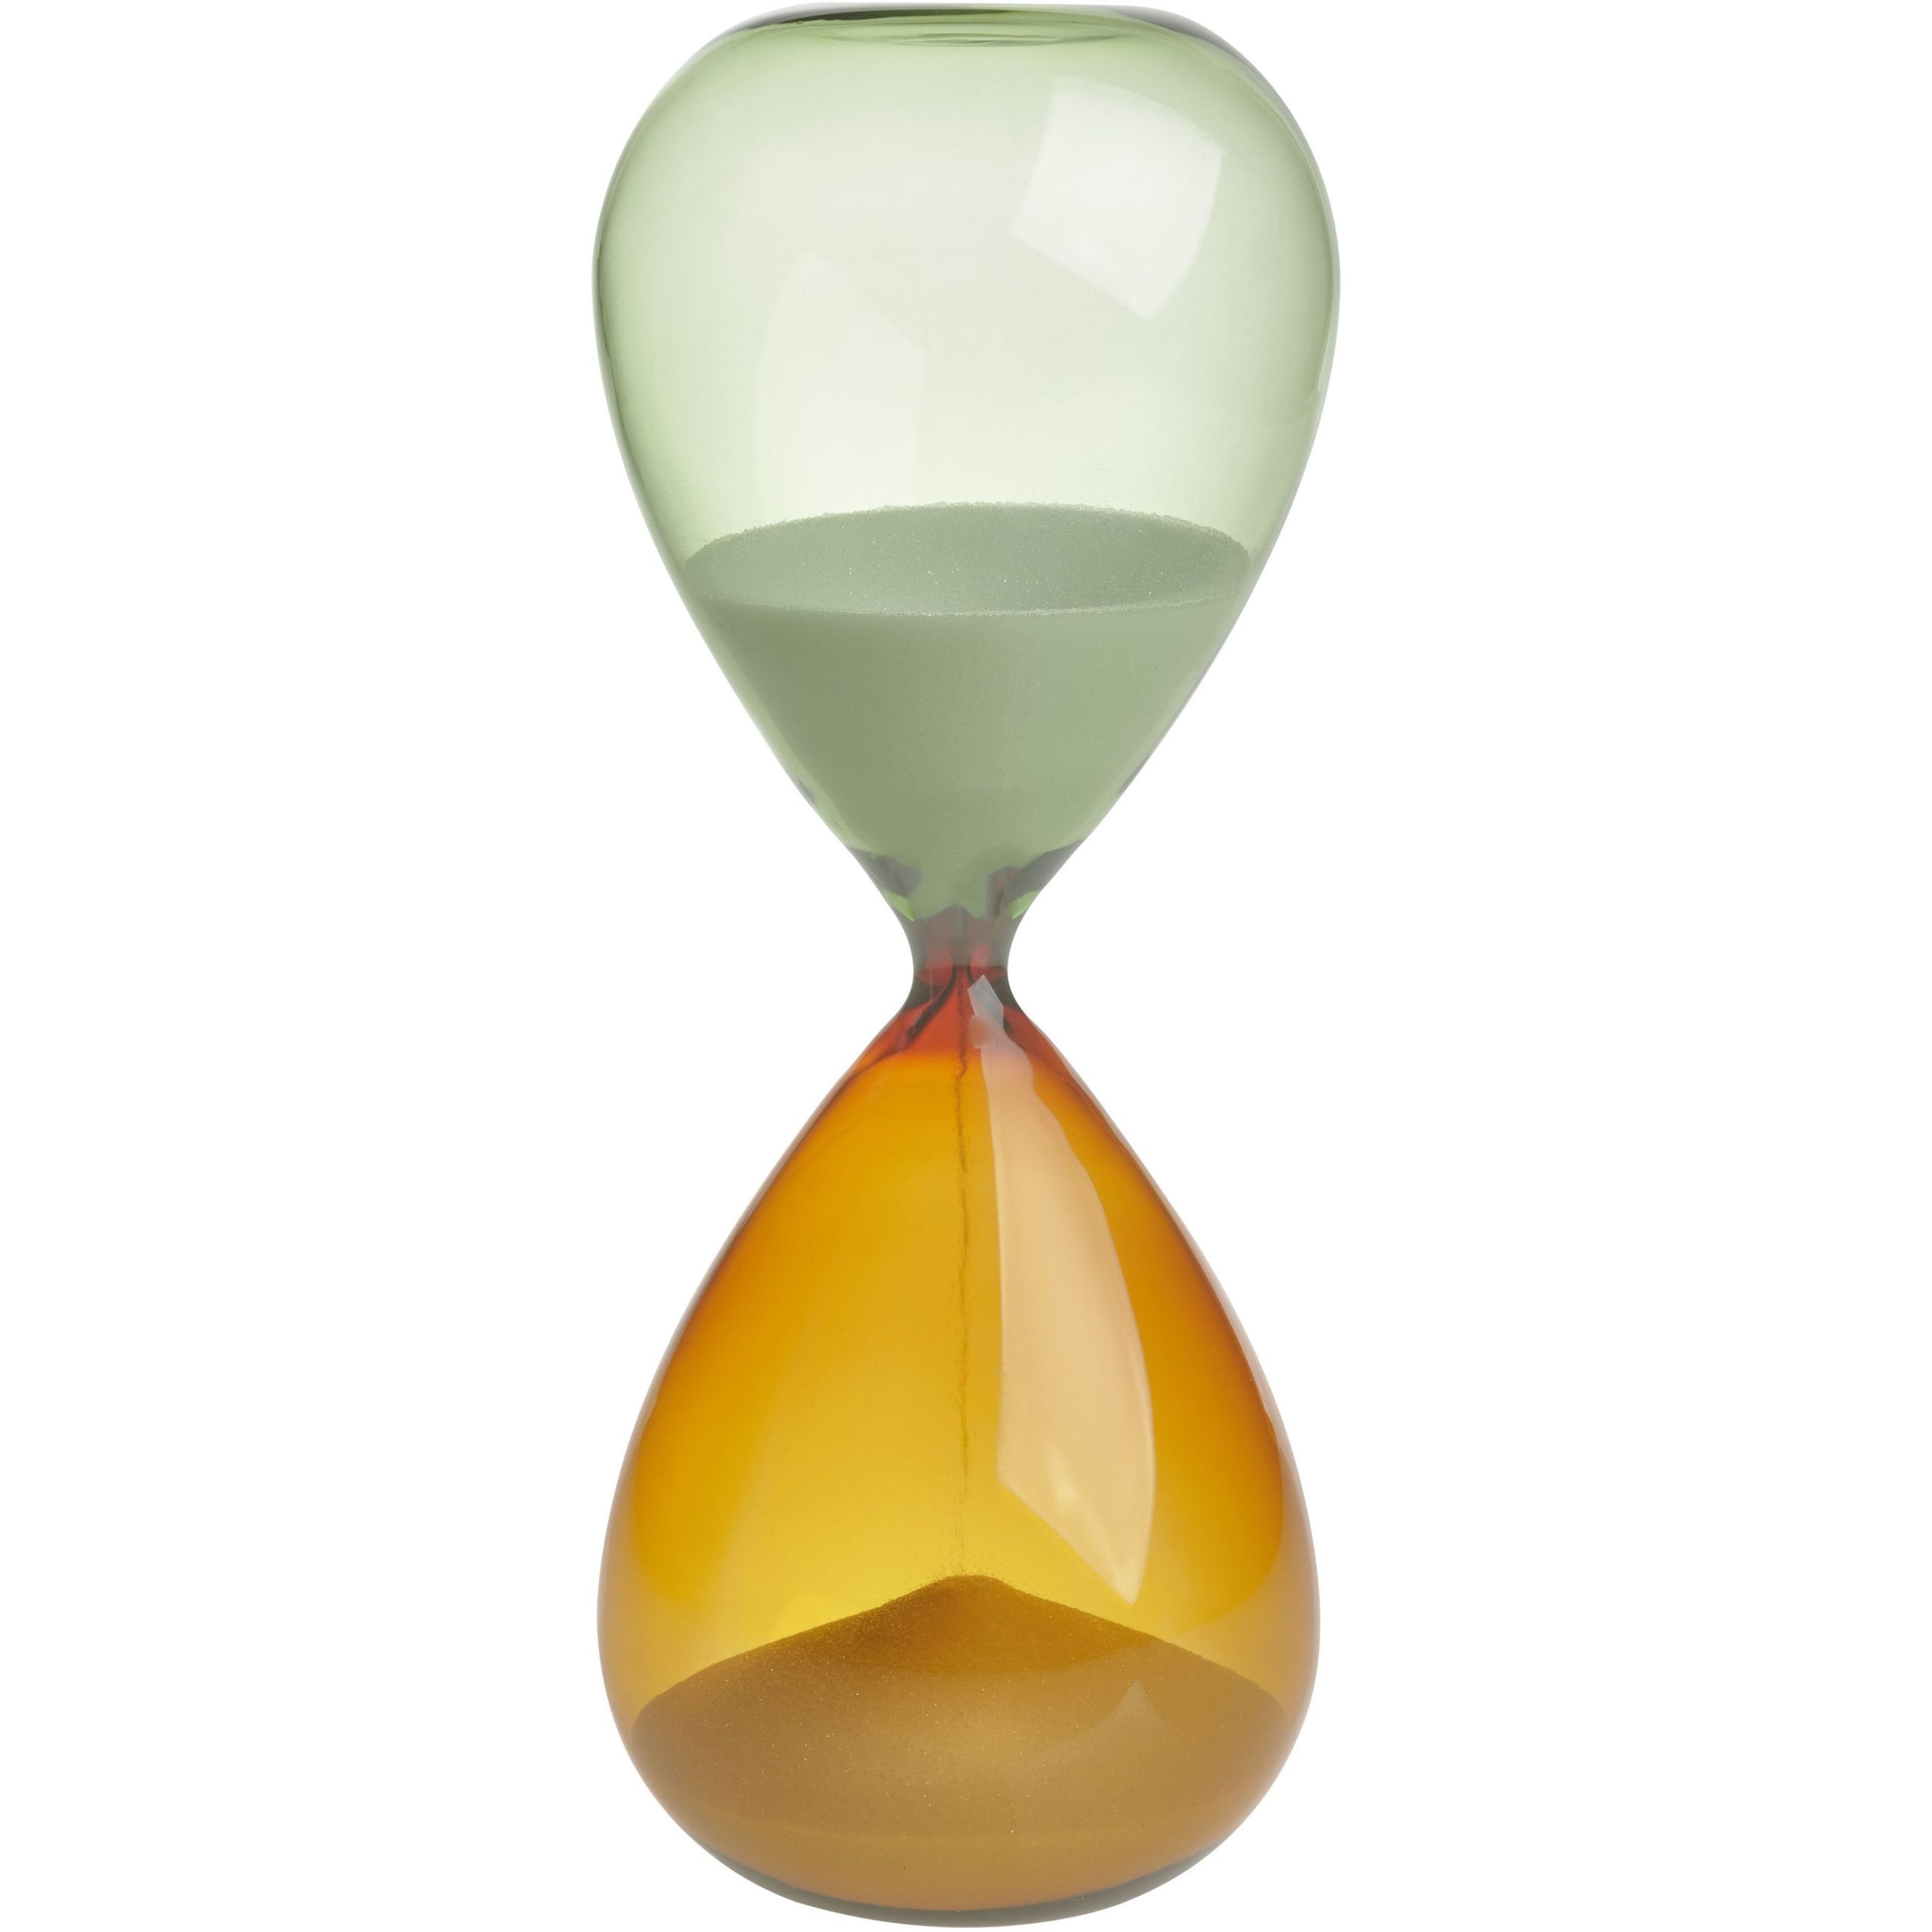 Песочные часы TFA (1860090241), 15 минут, таймер, белый песок, оранжево-зеленое стекло, 19 x 7.3 см